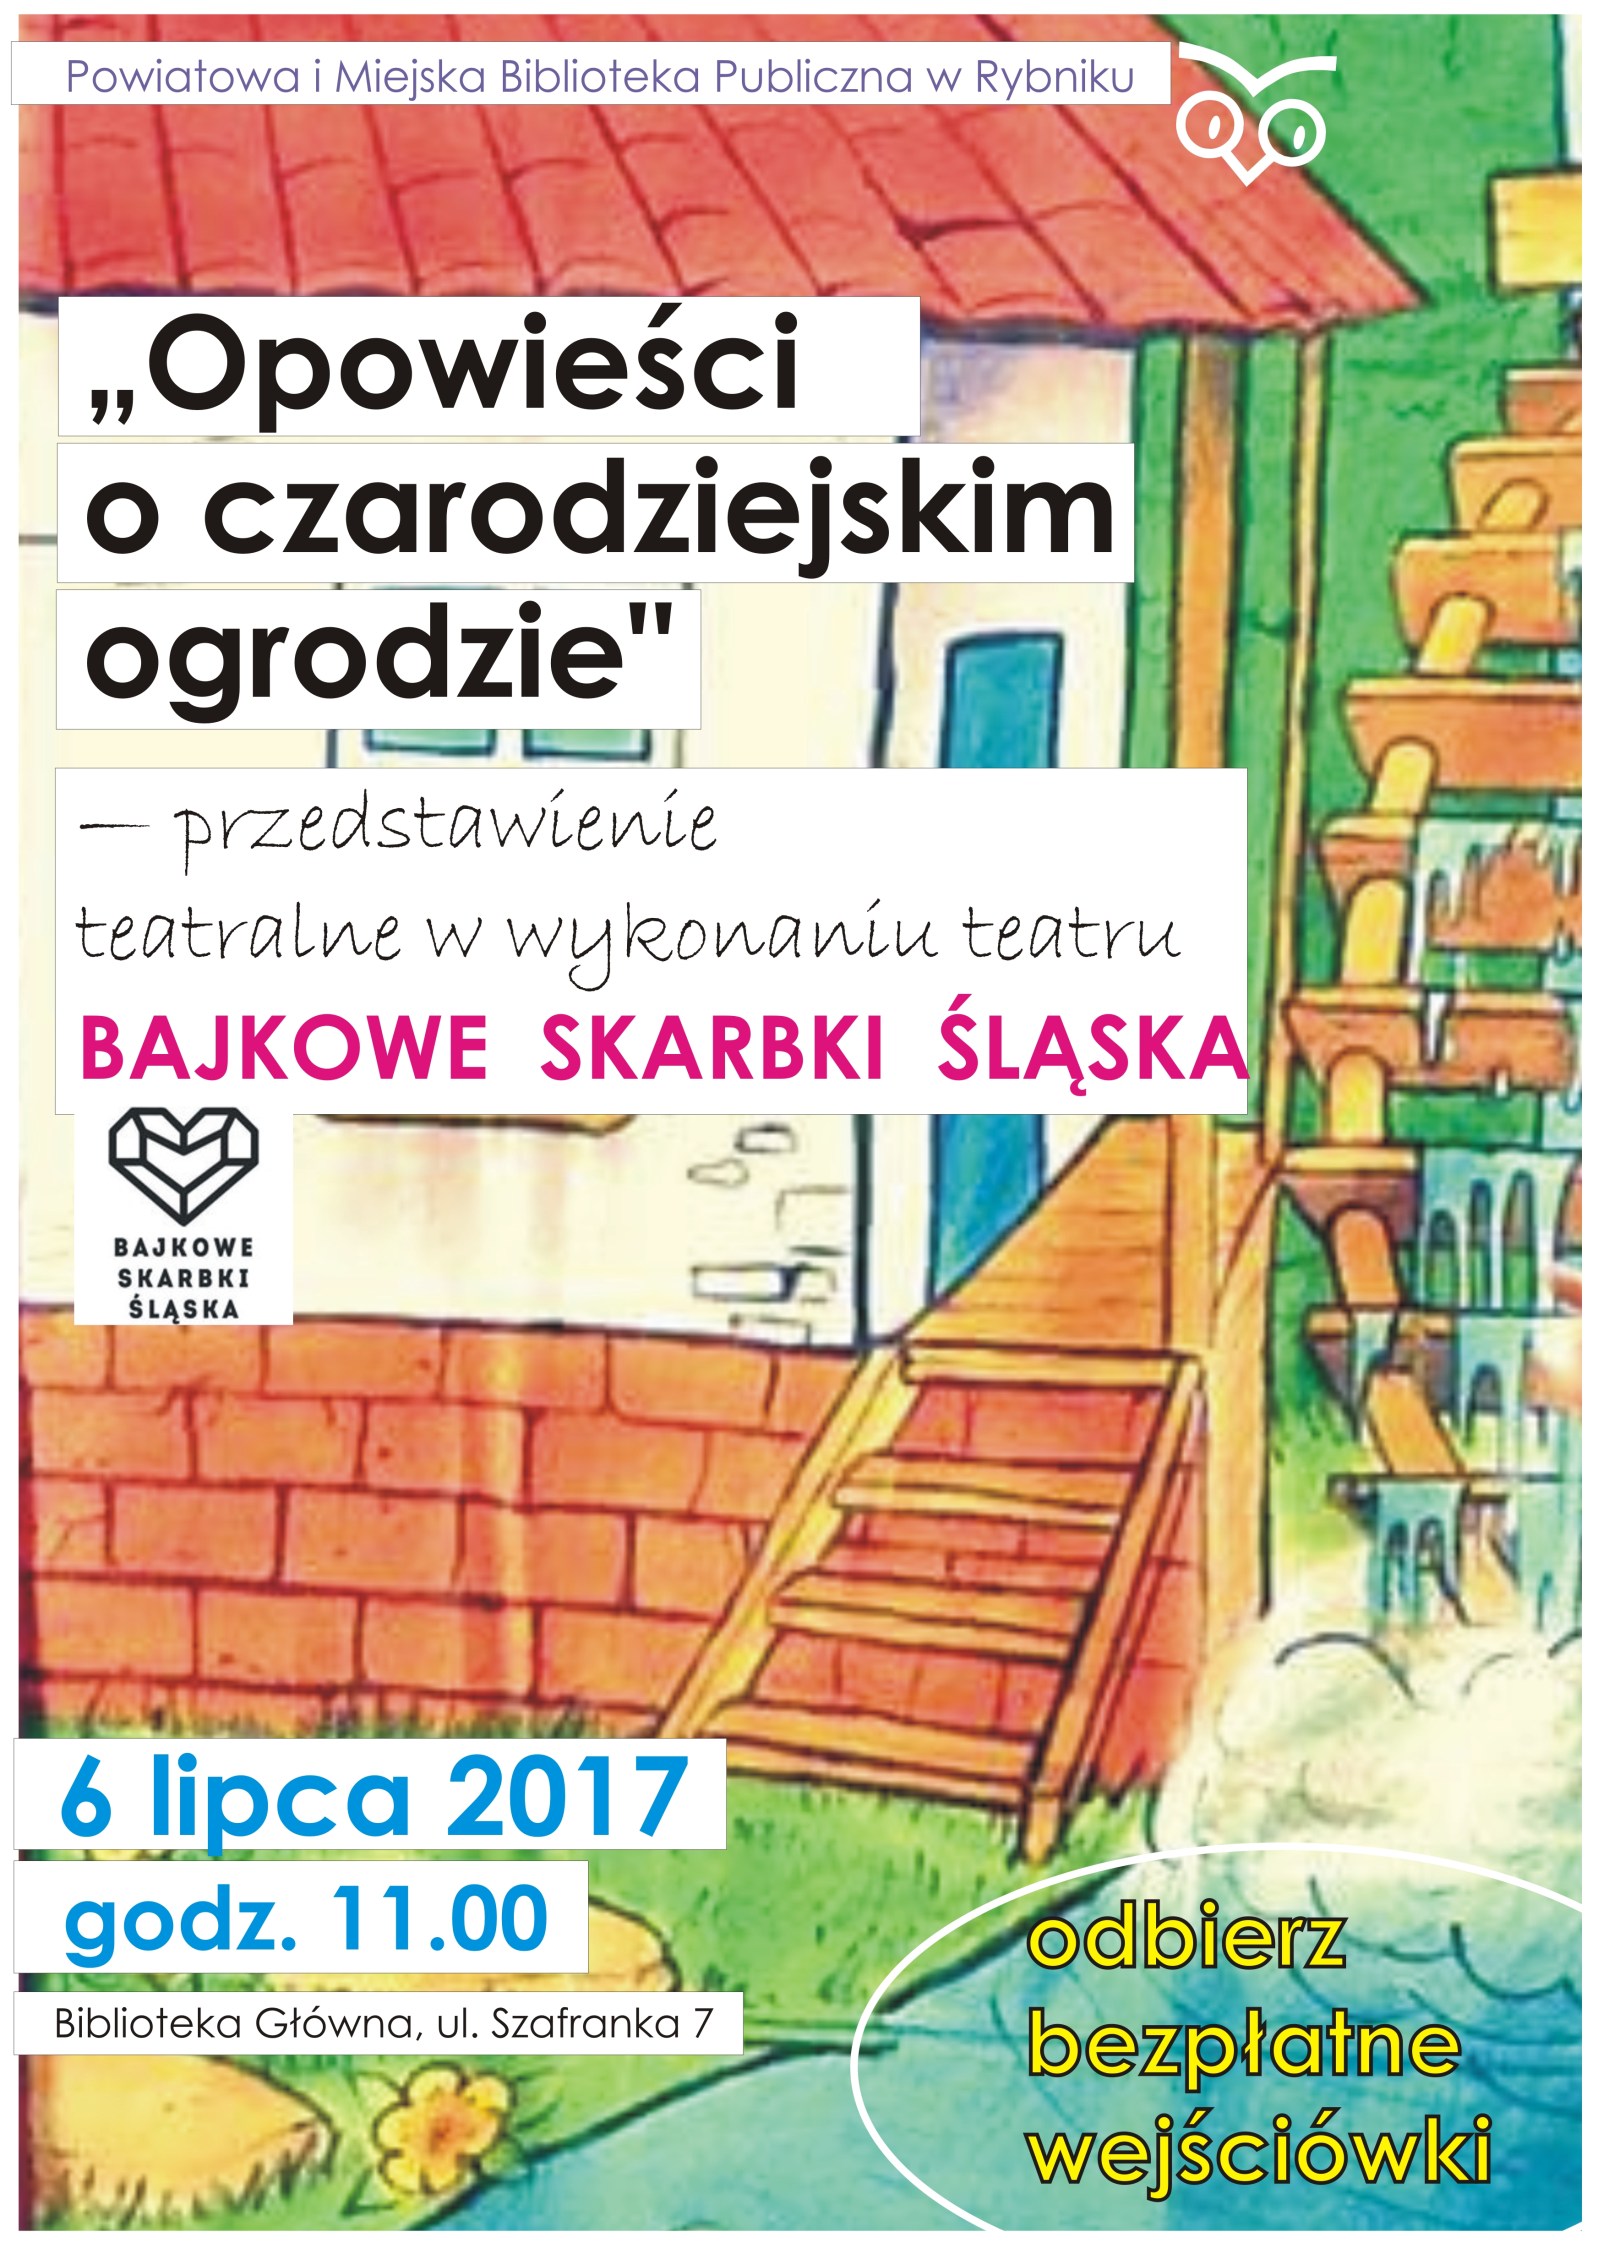 bajkowe_skarbki_slaska_przedstawienie_teatralne.jpg